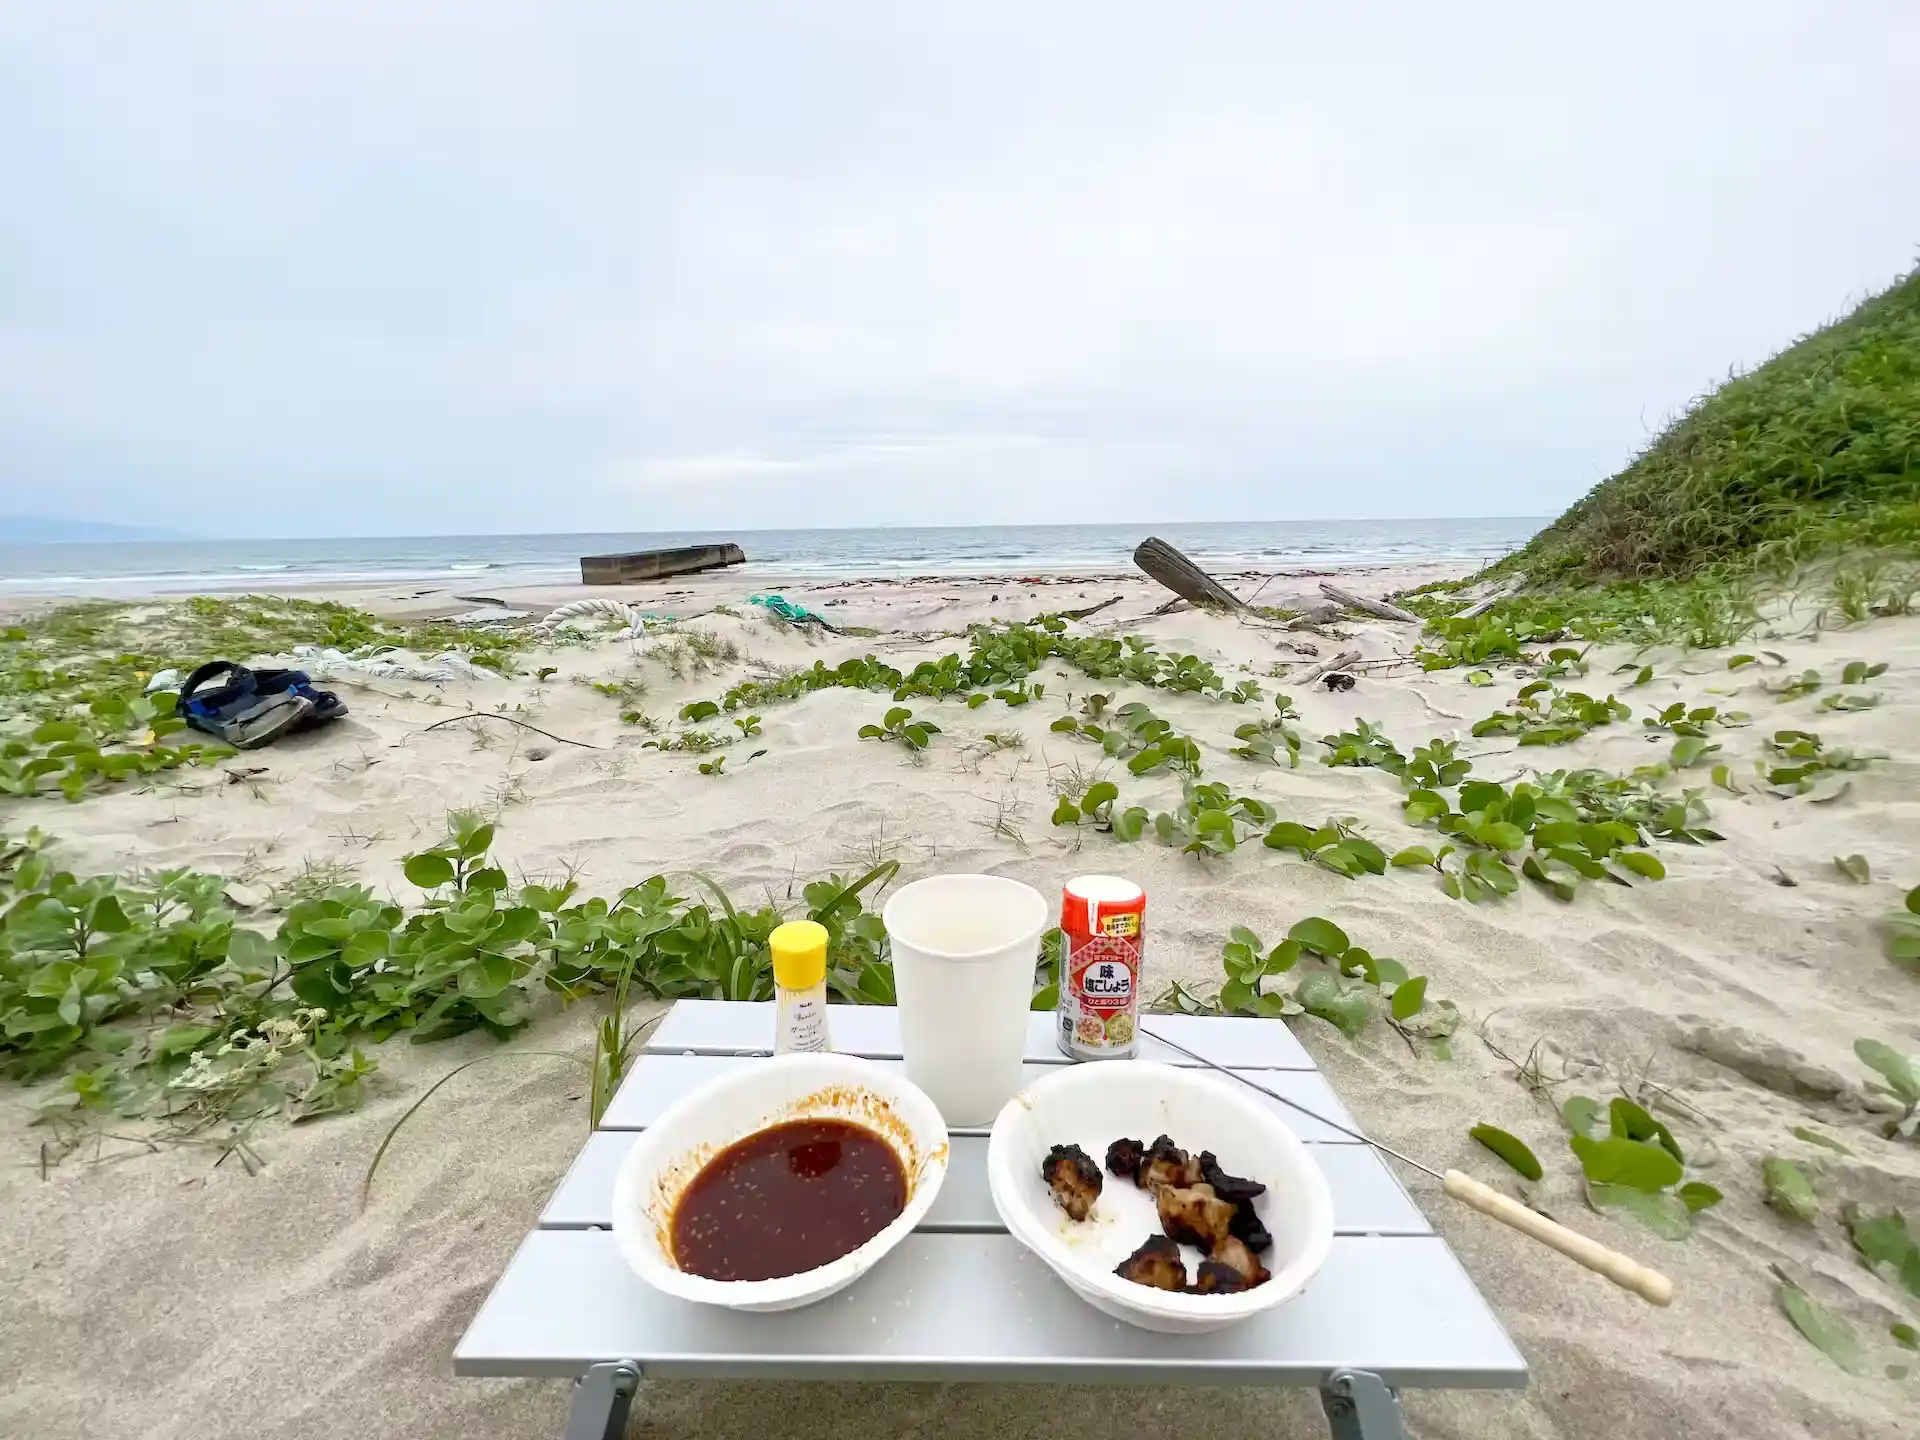 ダイソーのアルミライトテーブルを使って海で食事をしている